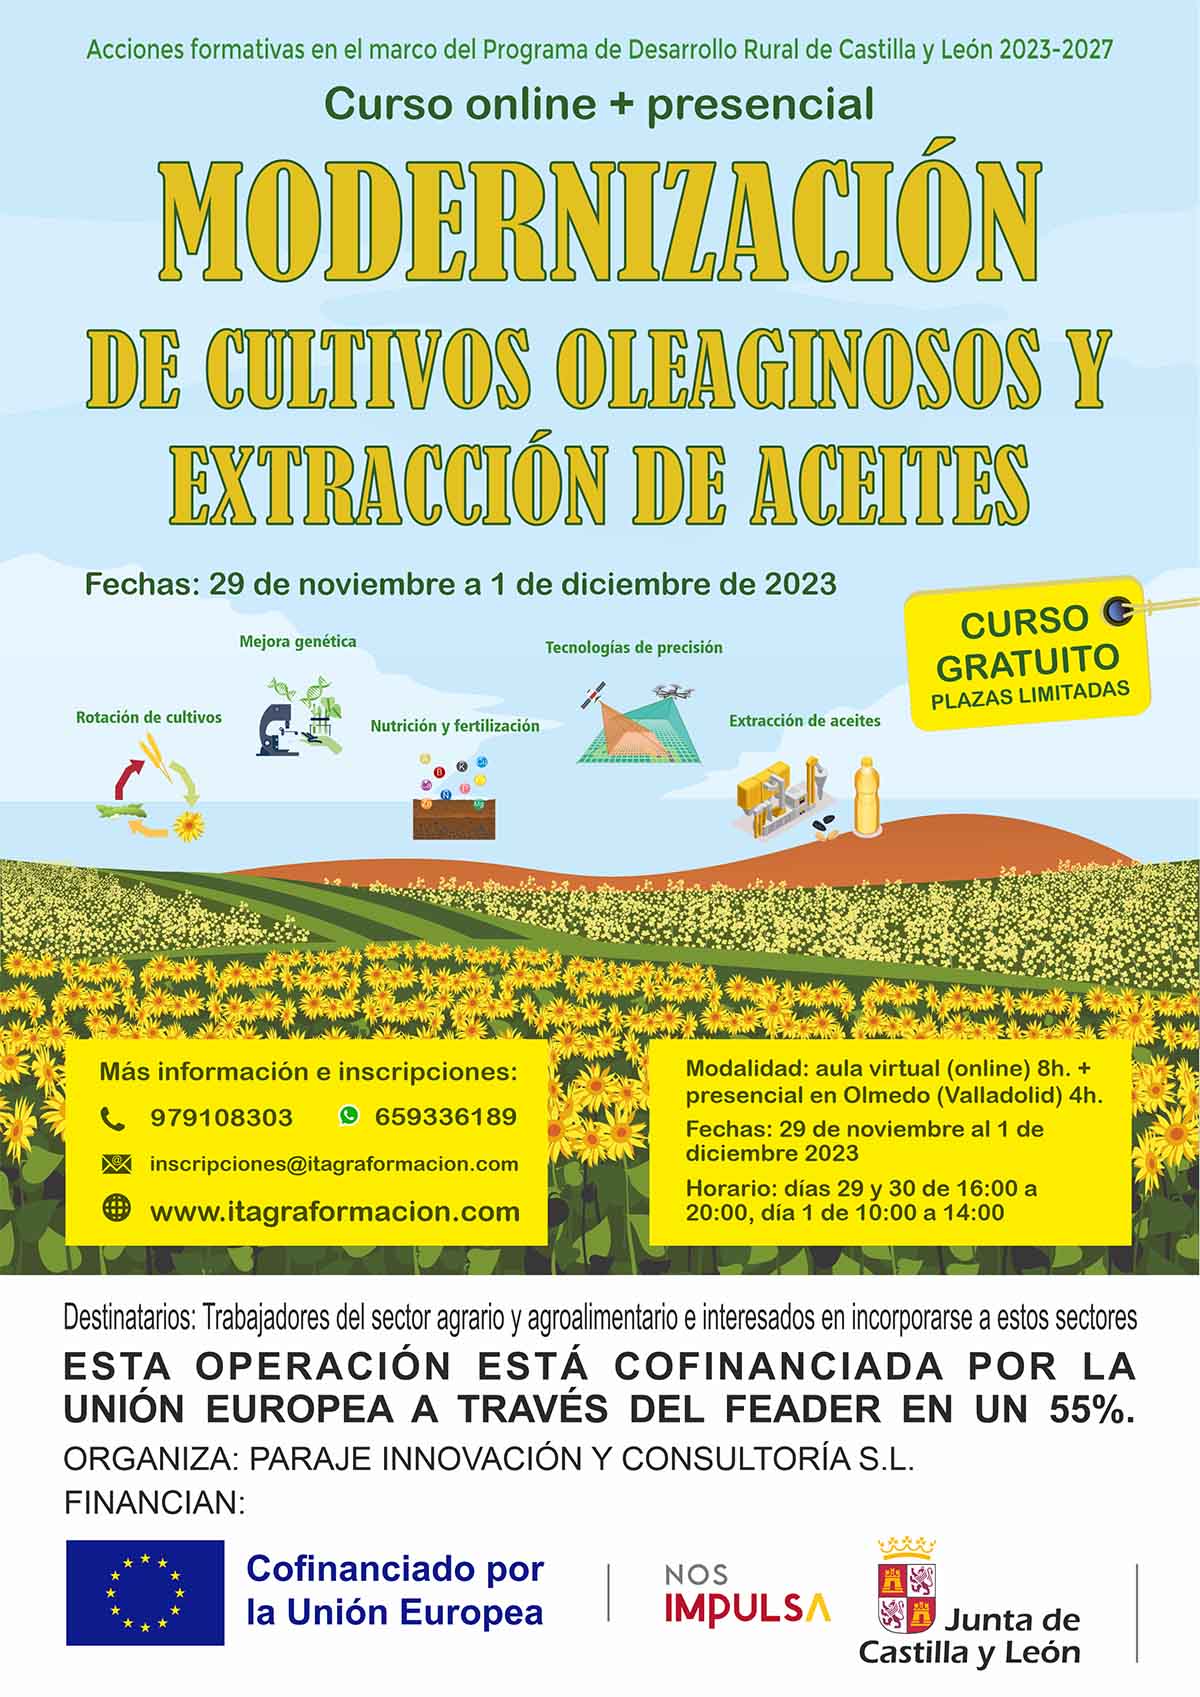 Modernización de cultivos oleaginosos y extracción de aceites